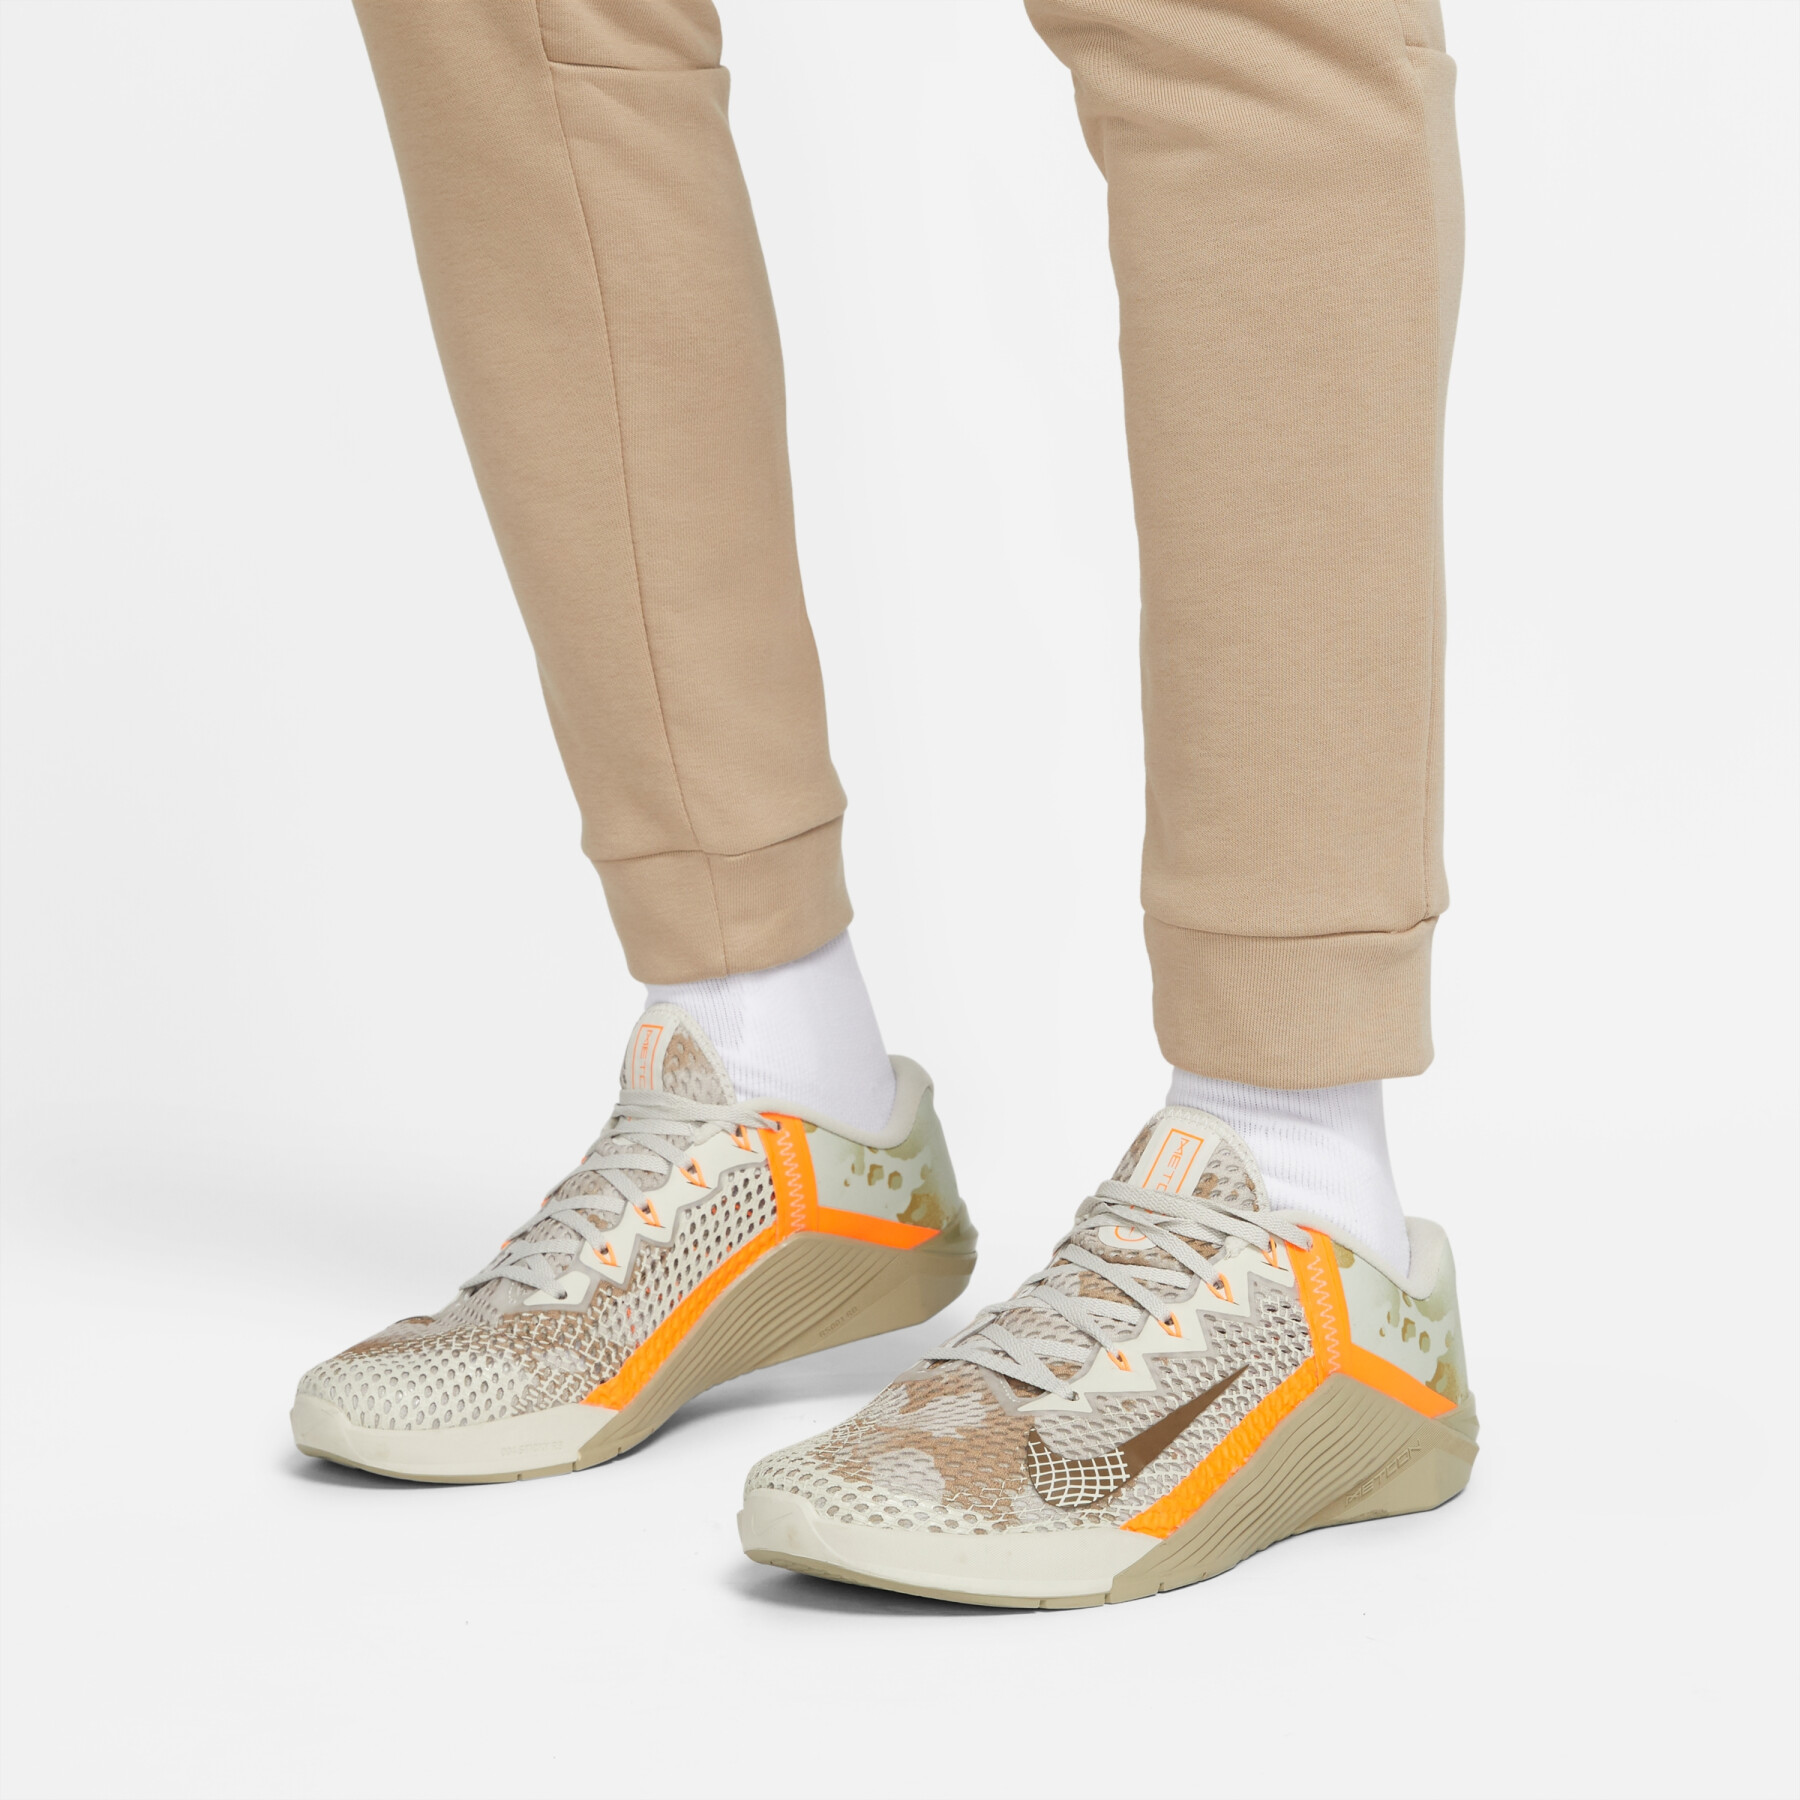 Pantaloni sportivi Nike Dri-FIT